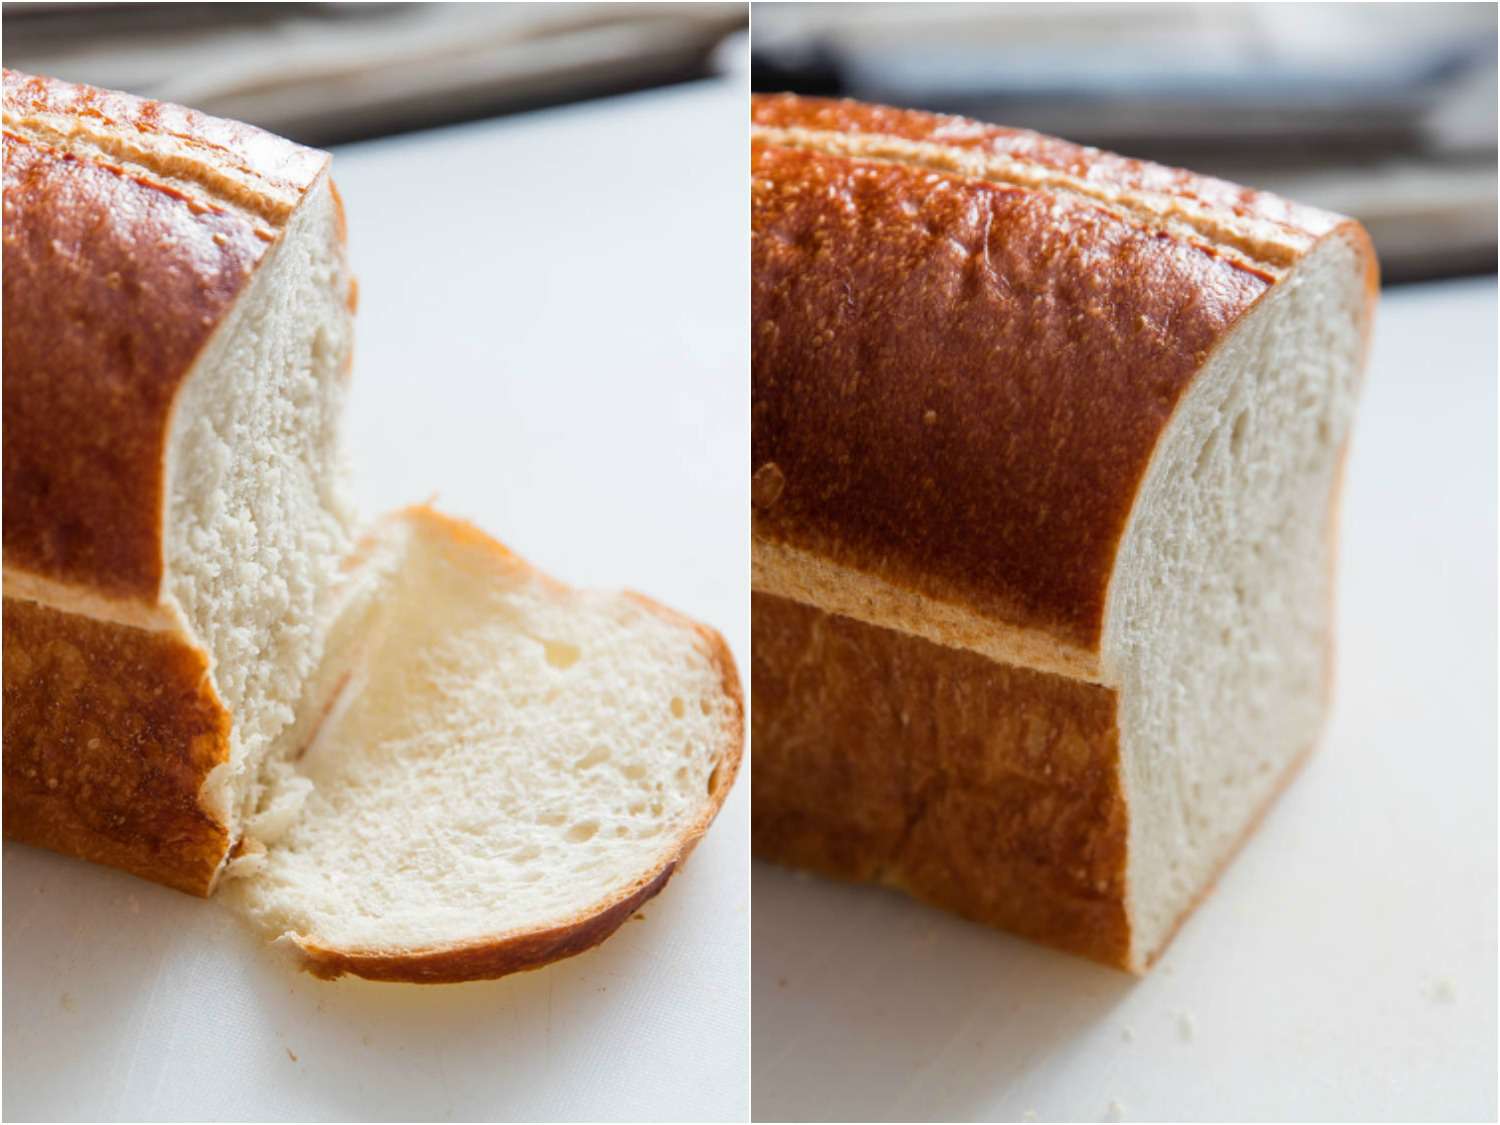 用刀切软面包会弄伤面包片，而用我们最喜欢的刀切的面包很容易就能切干净